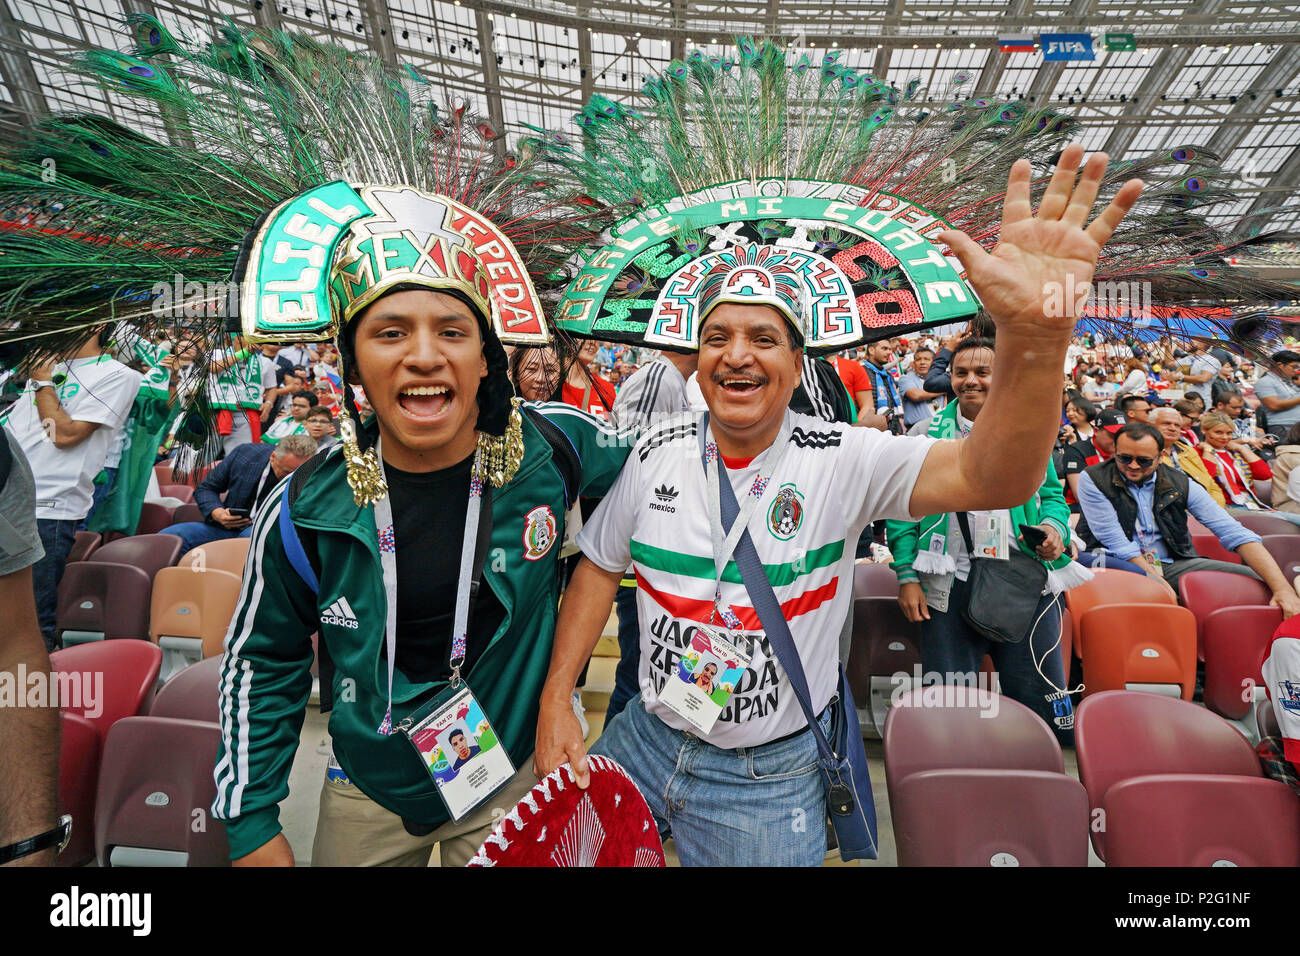 Rusia, Arabia Saudita, Fútbol, Moscú, 14 de junio de 2018 Rusia - Arabia Saudita Fans de México están celebrando con trajes de fantasía de la Copa Mundial de la FIFA 2018